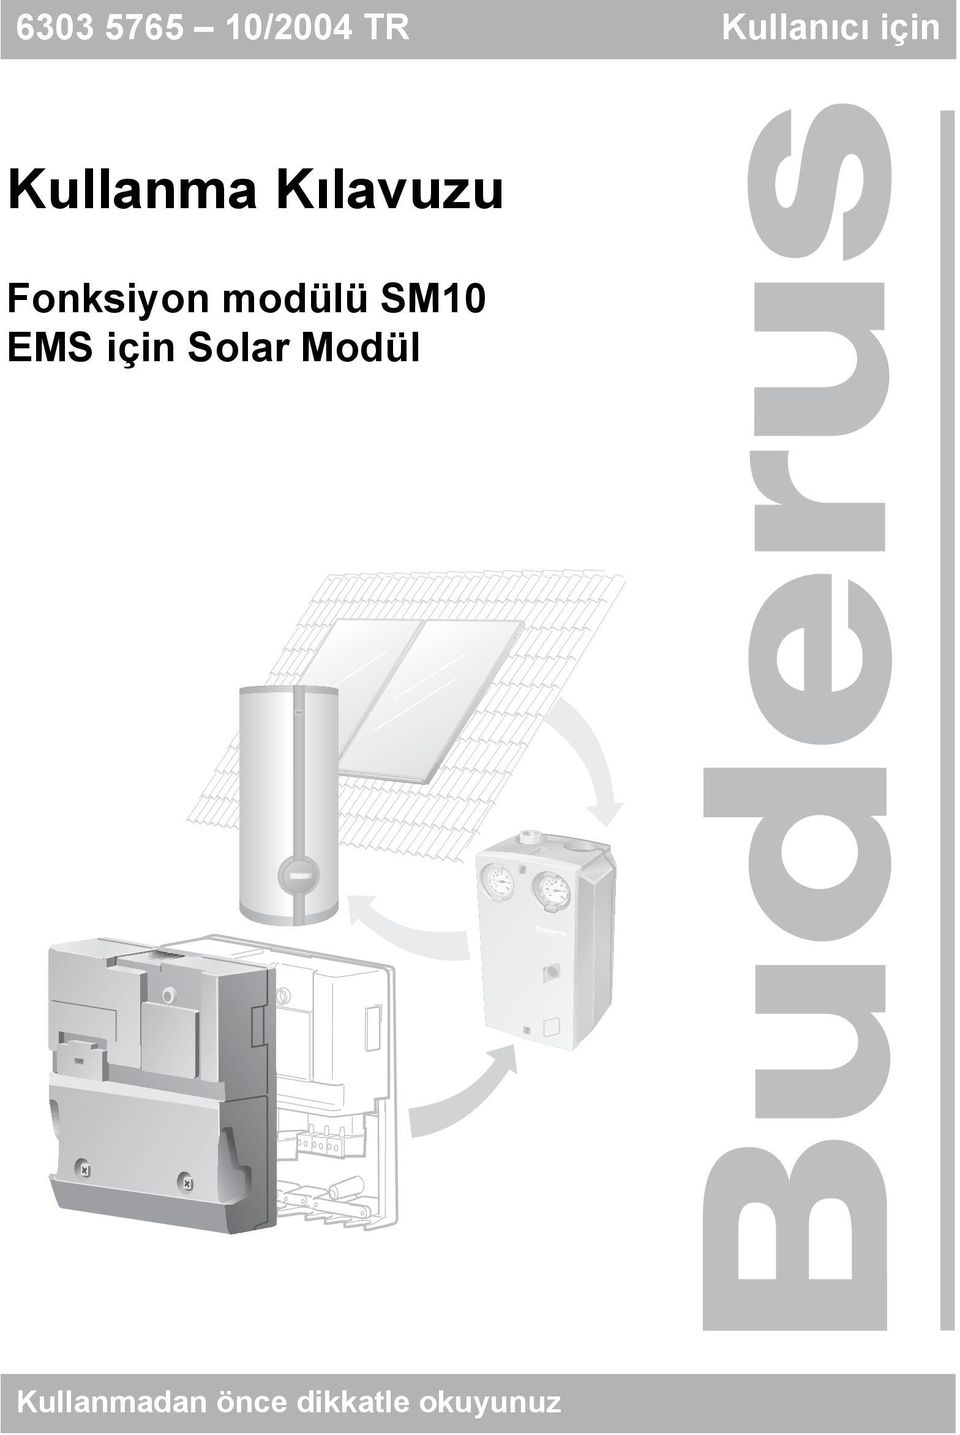 modülü SM10 EMS için Solar Modül